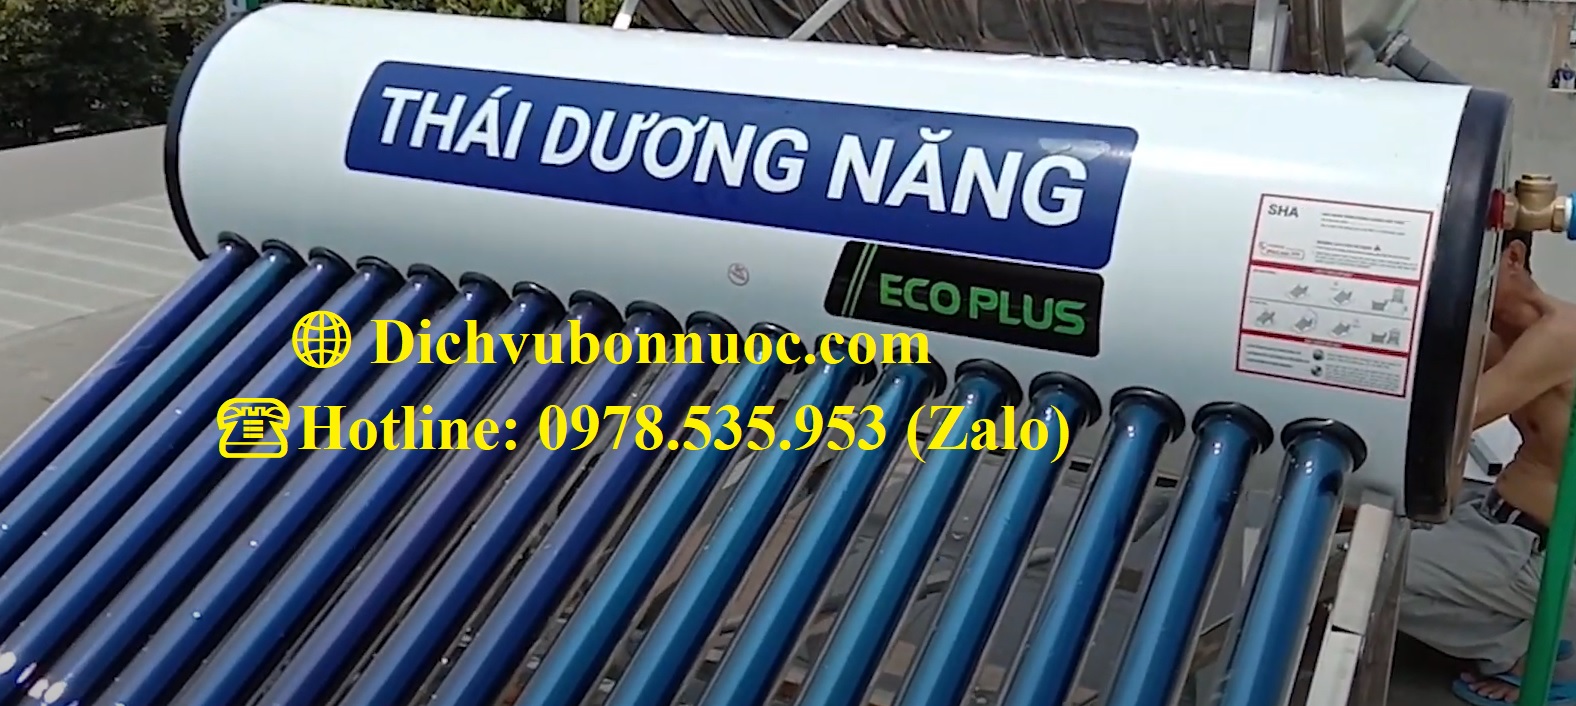 Máy nước nóng Thái Dương Năng Sơn Hà 160L Eco